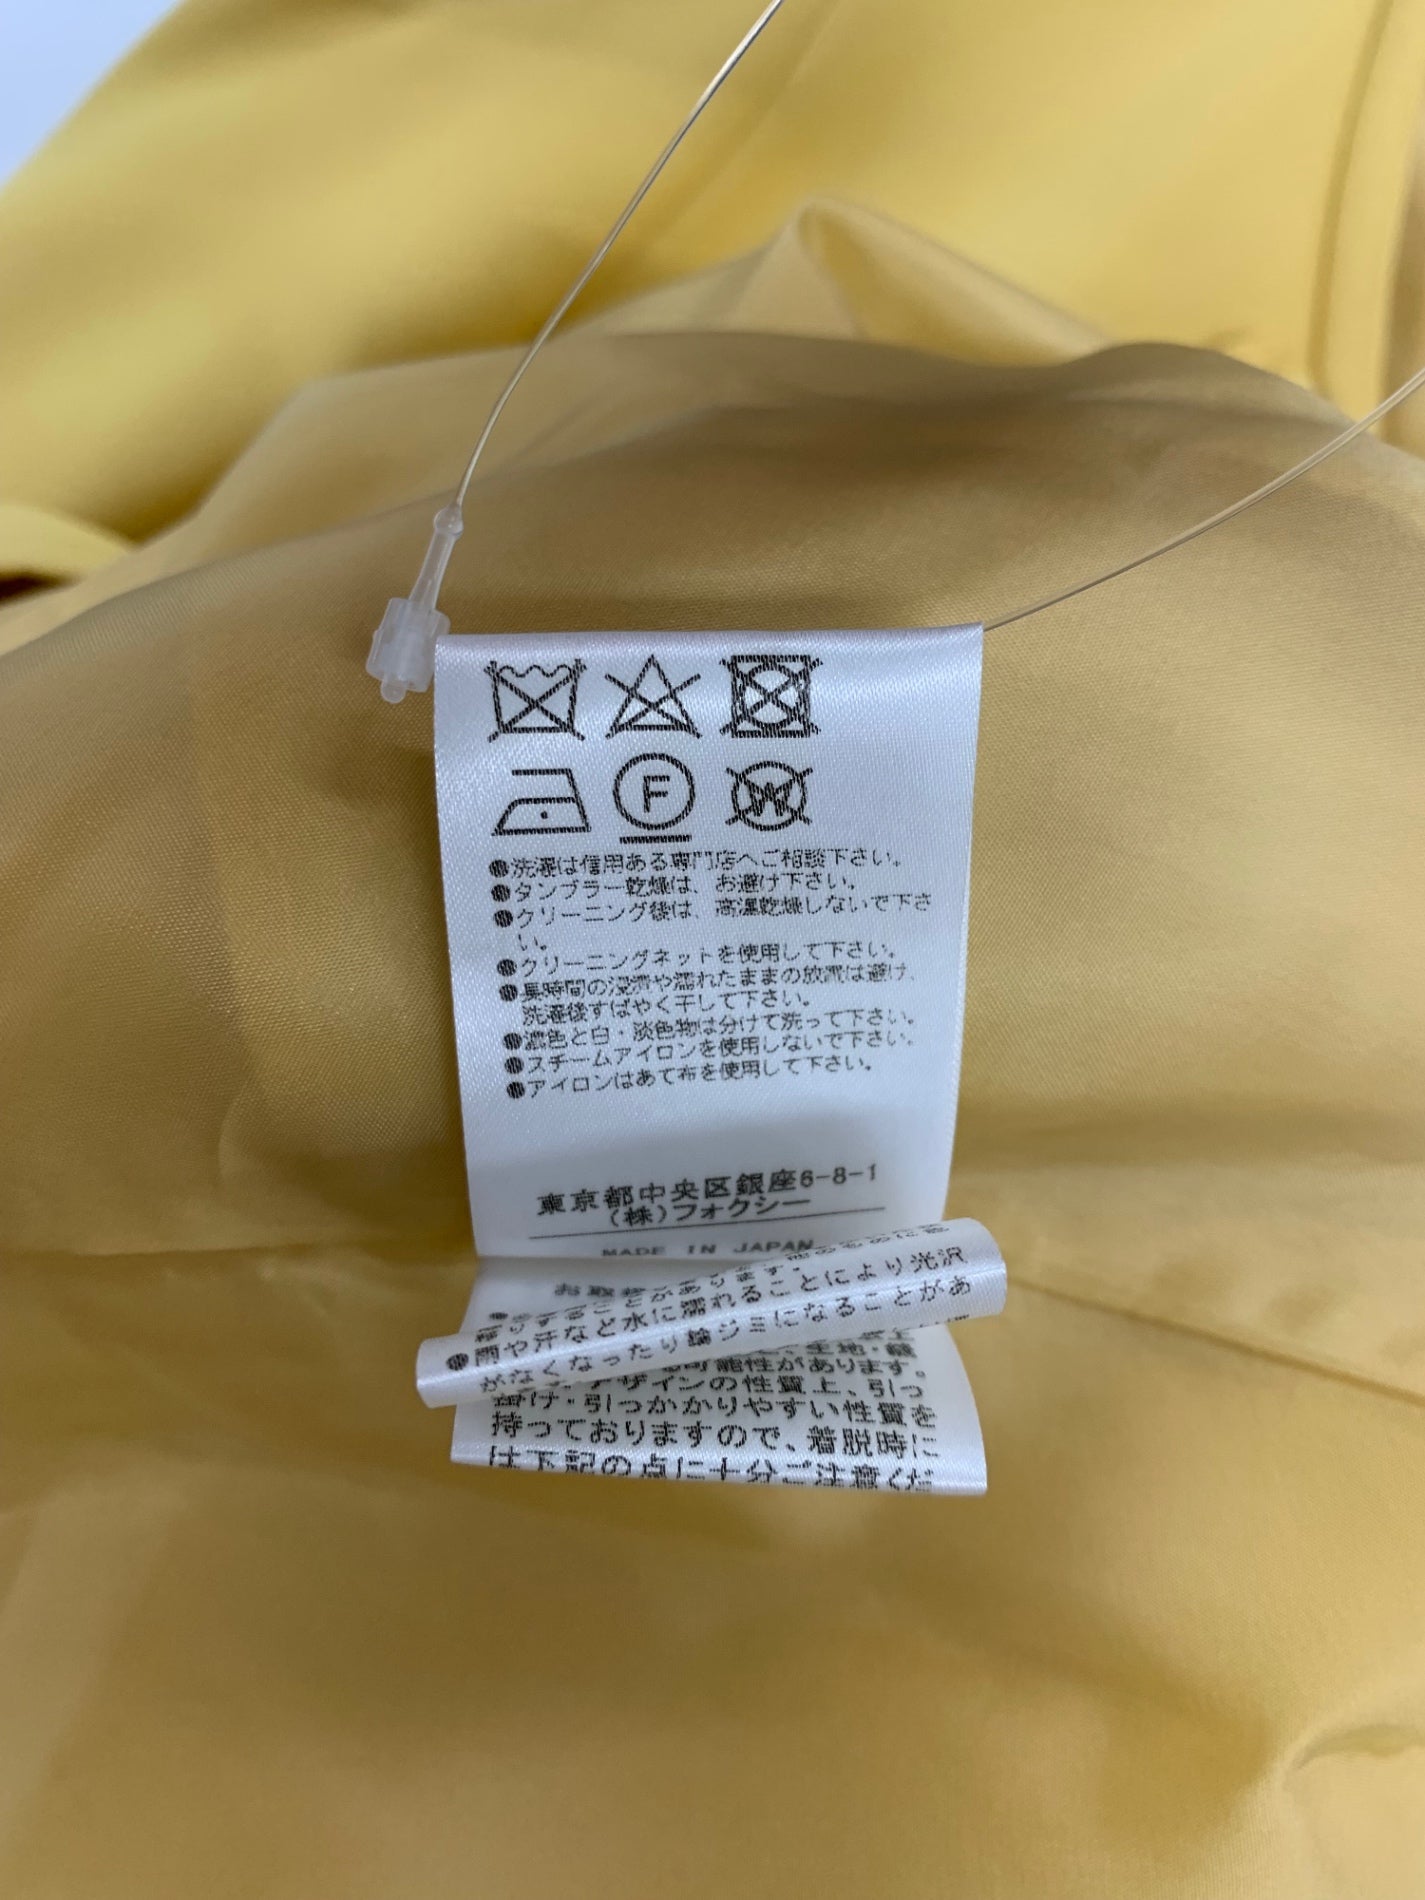 フォクシーブティック Dress Ardoise 34152 ワンピース ドレス 40 イエロー アルドワーズ 2019年増産品 |  中古ブランド品・古着通販ビープライス